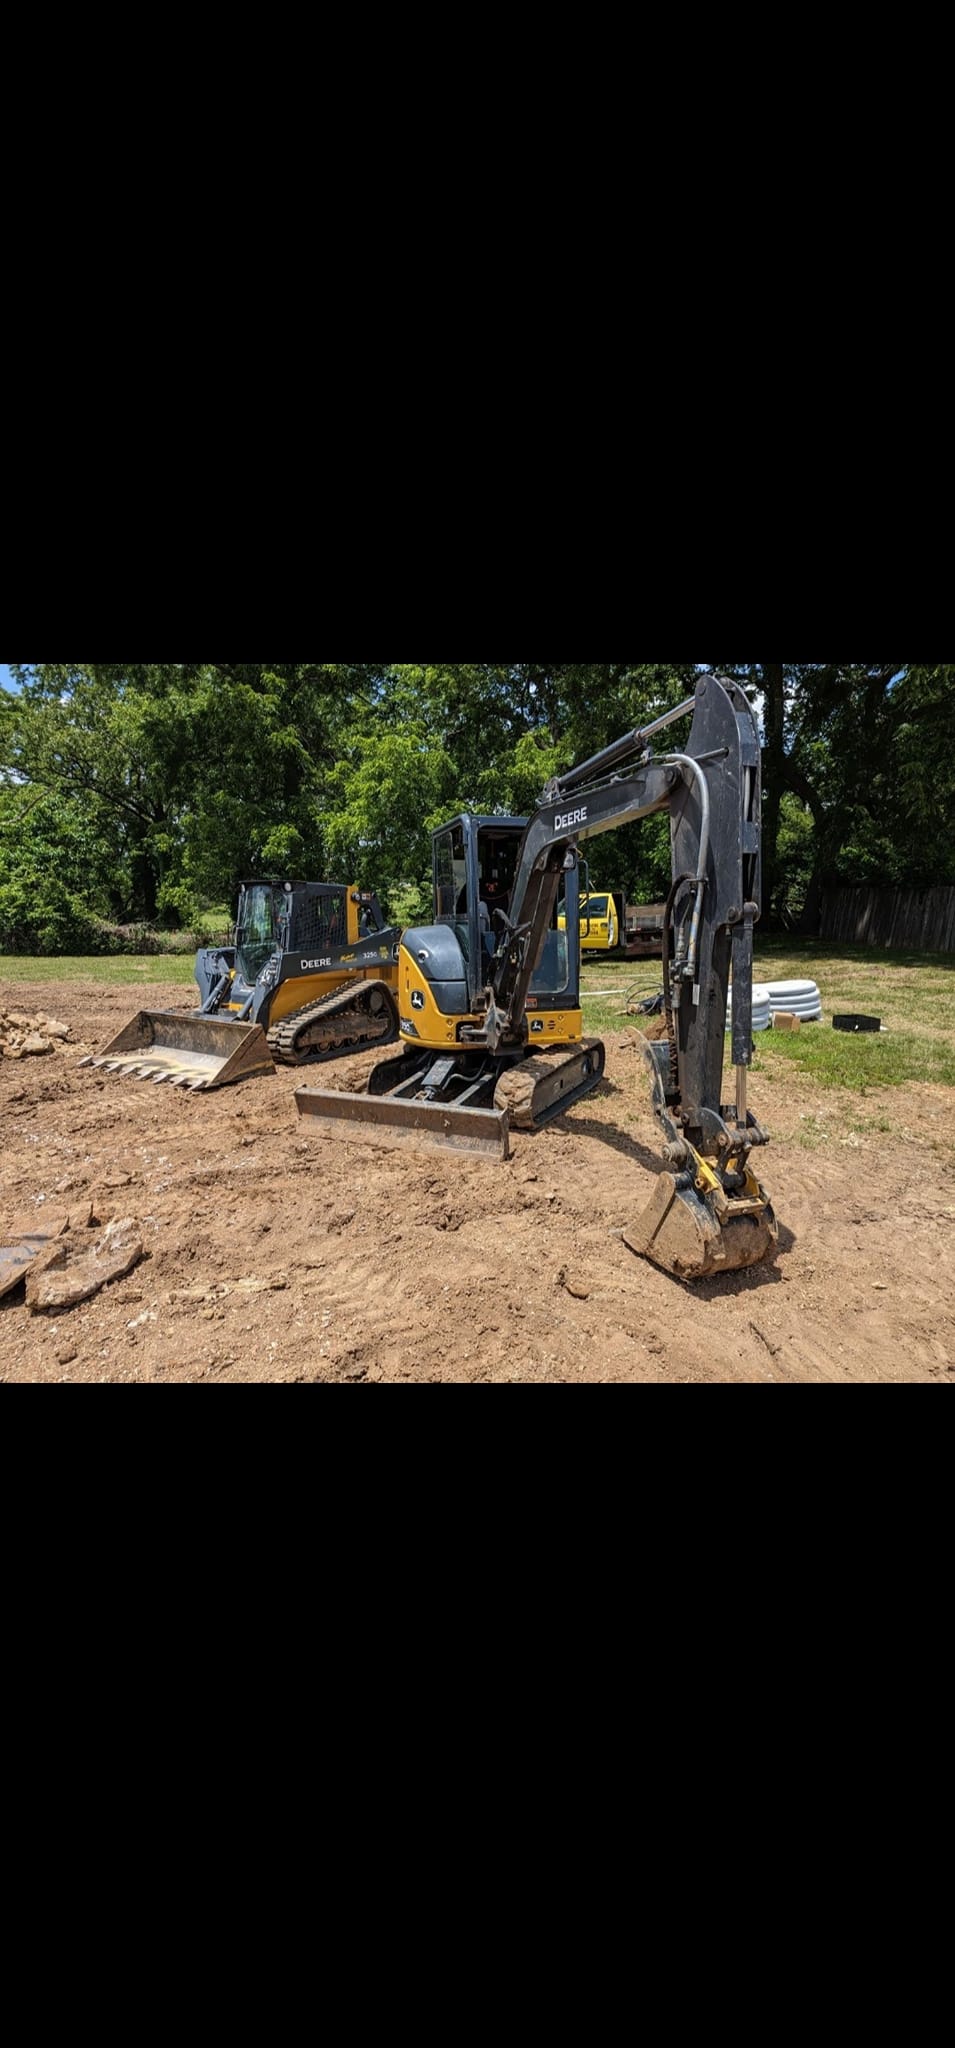 MMI PLUMBING & Excavation 305 Birch Ln, Waynesville Missouri 65583